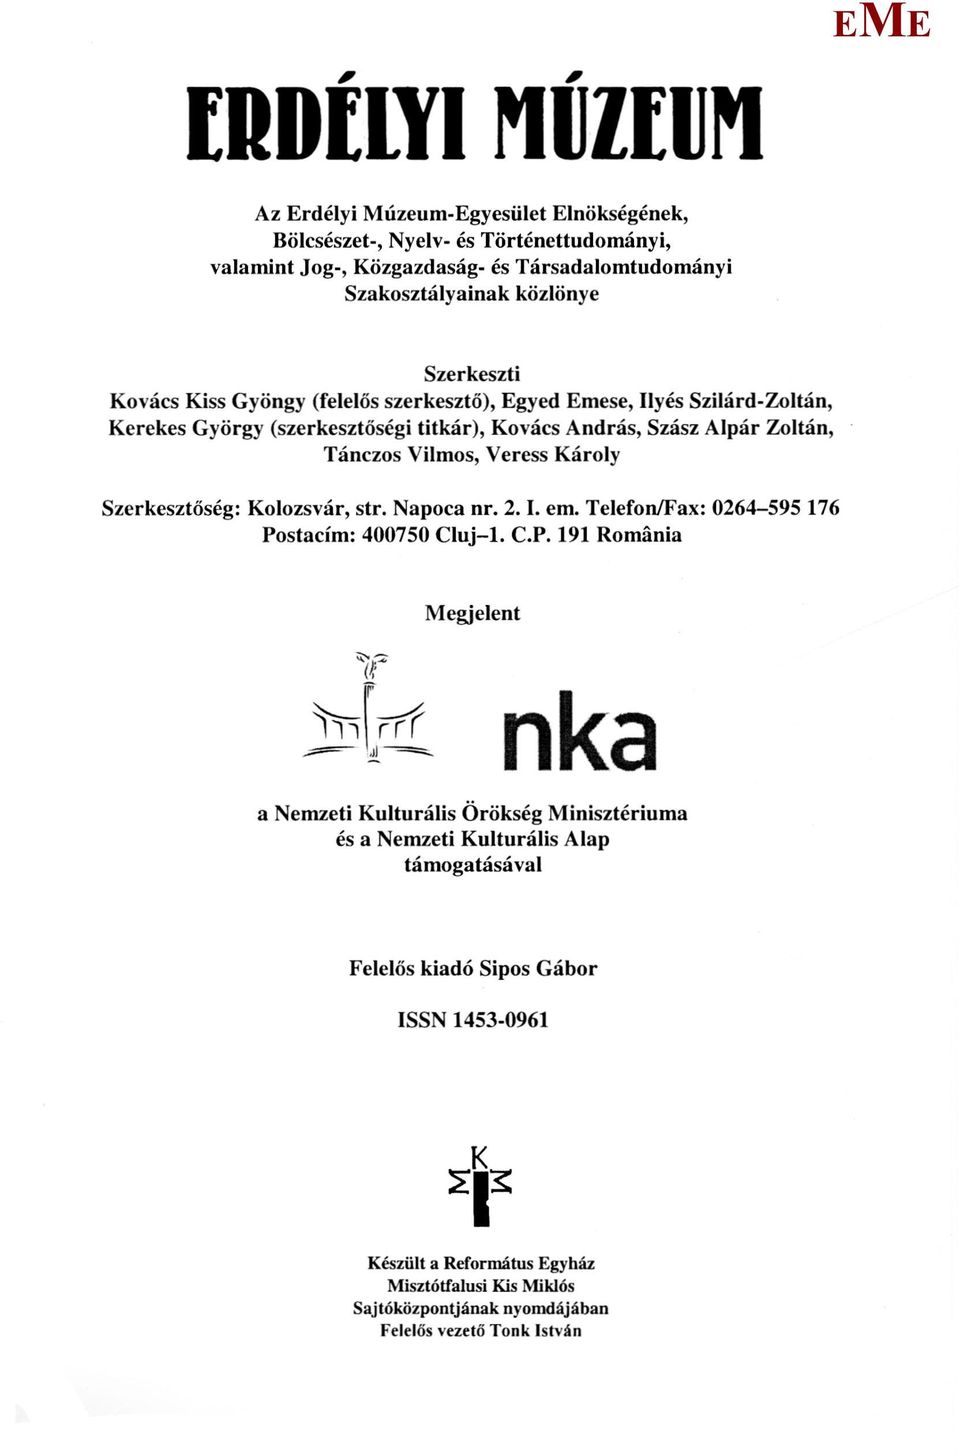 Szerkesztőség: Kolozsvár, str. Napoca nr. 2.1, em. Telefon/Fax: 0264-595 176 Po